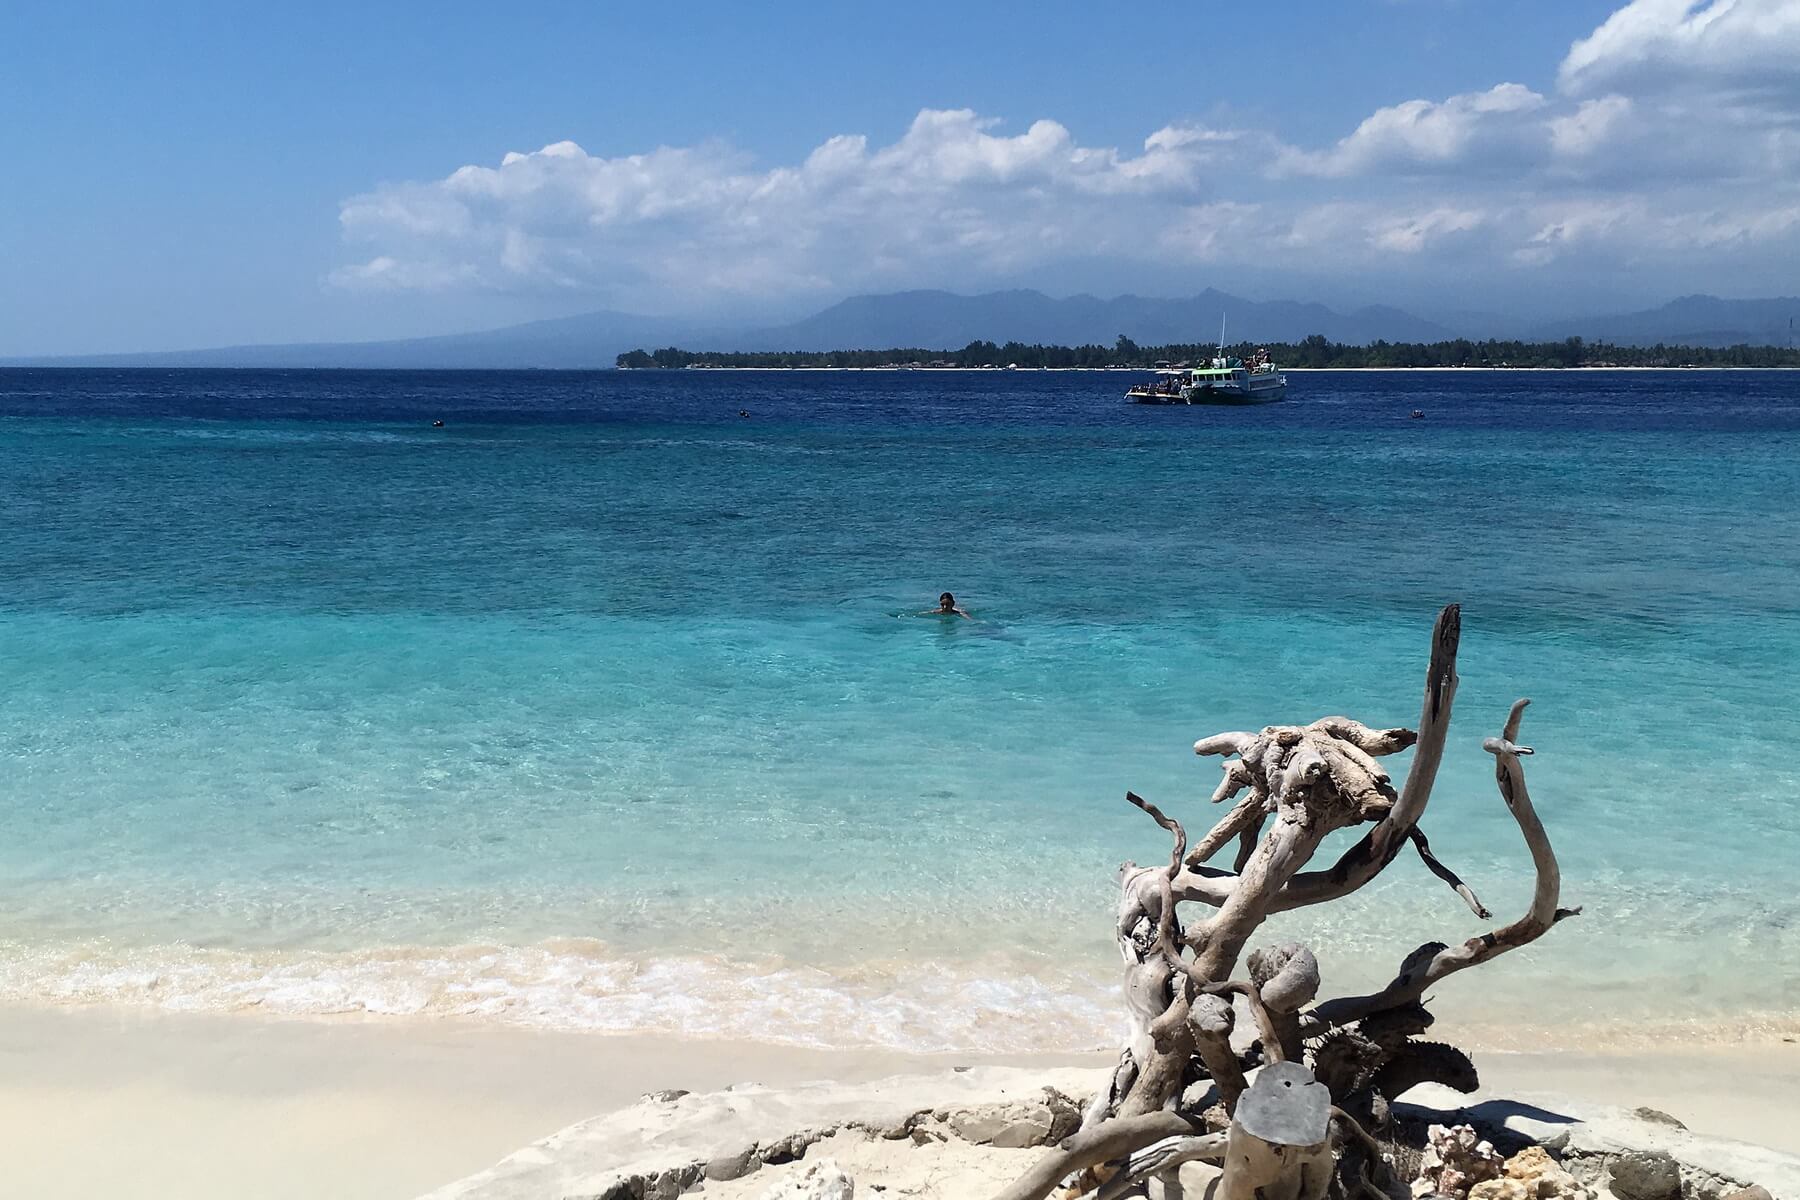 Kristallklares Wasser und weißer Sandstrand auf den Gilis, vor Lombok.